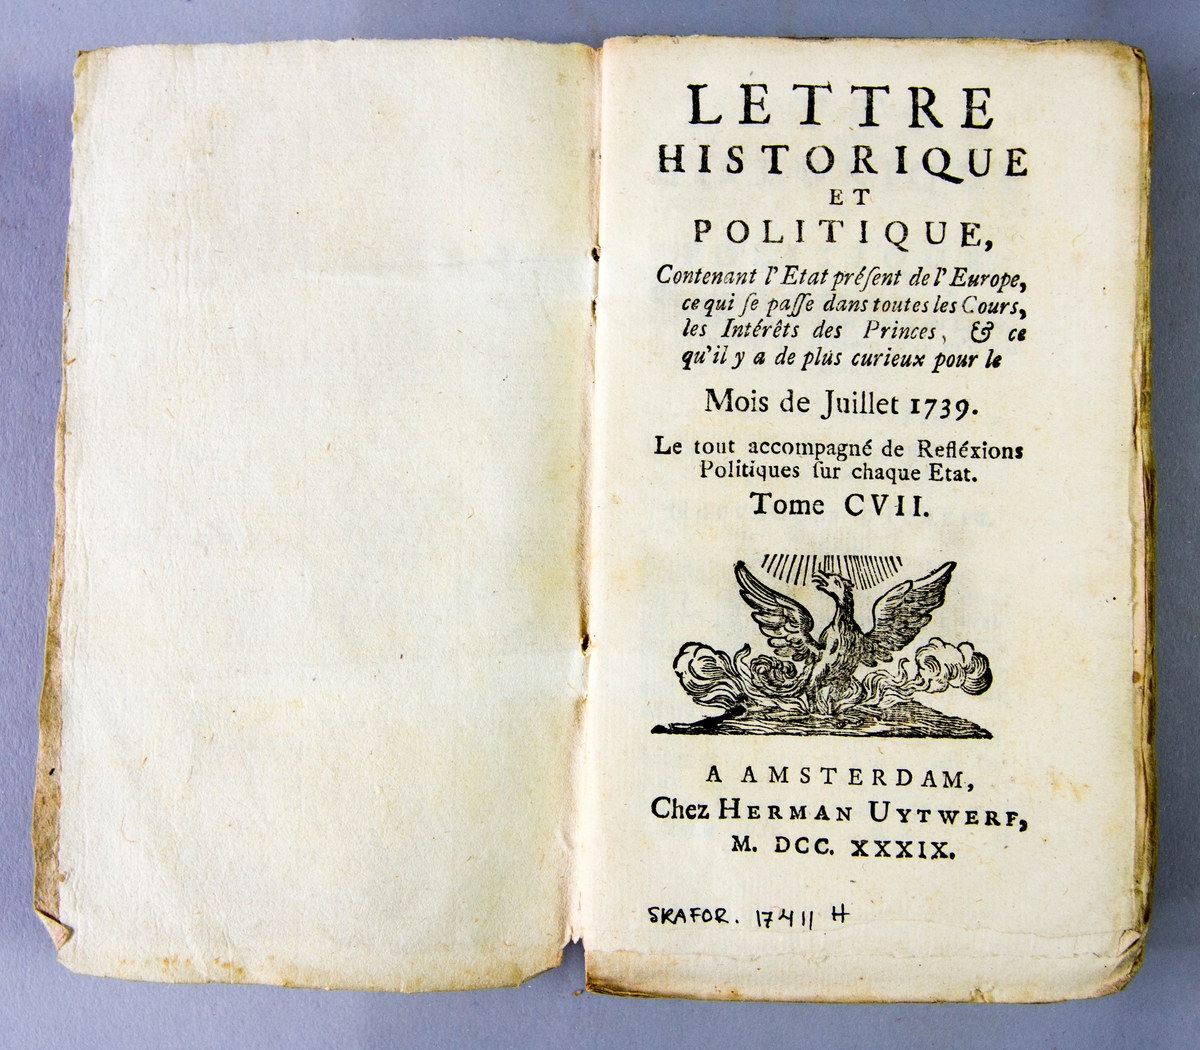 Bok, häftad, "Lettre historique et politique",  del 107, tryckt 1739 i Amsterdam. Pärmar av marmorerat papper, blekt rygg med påklistrade etiketter med titel och samlingsnummer. Oskuret snitt.